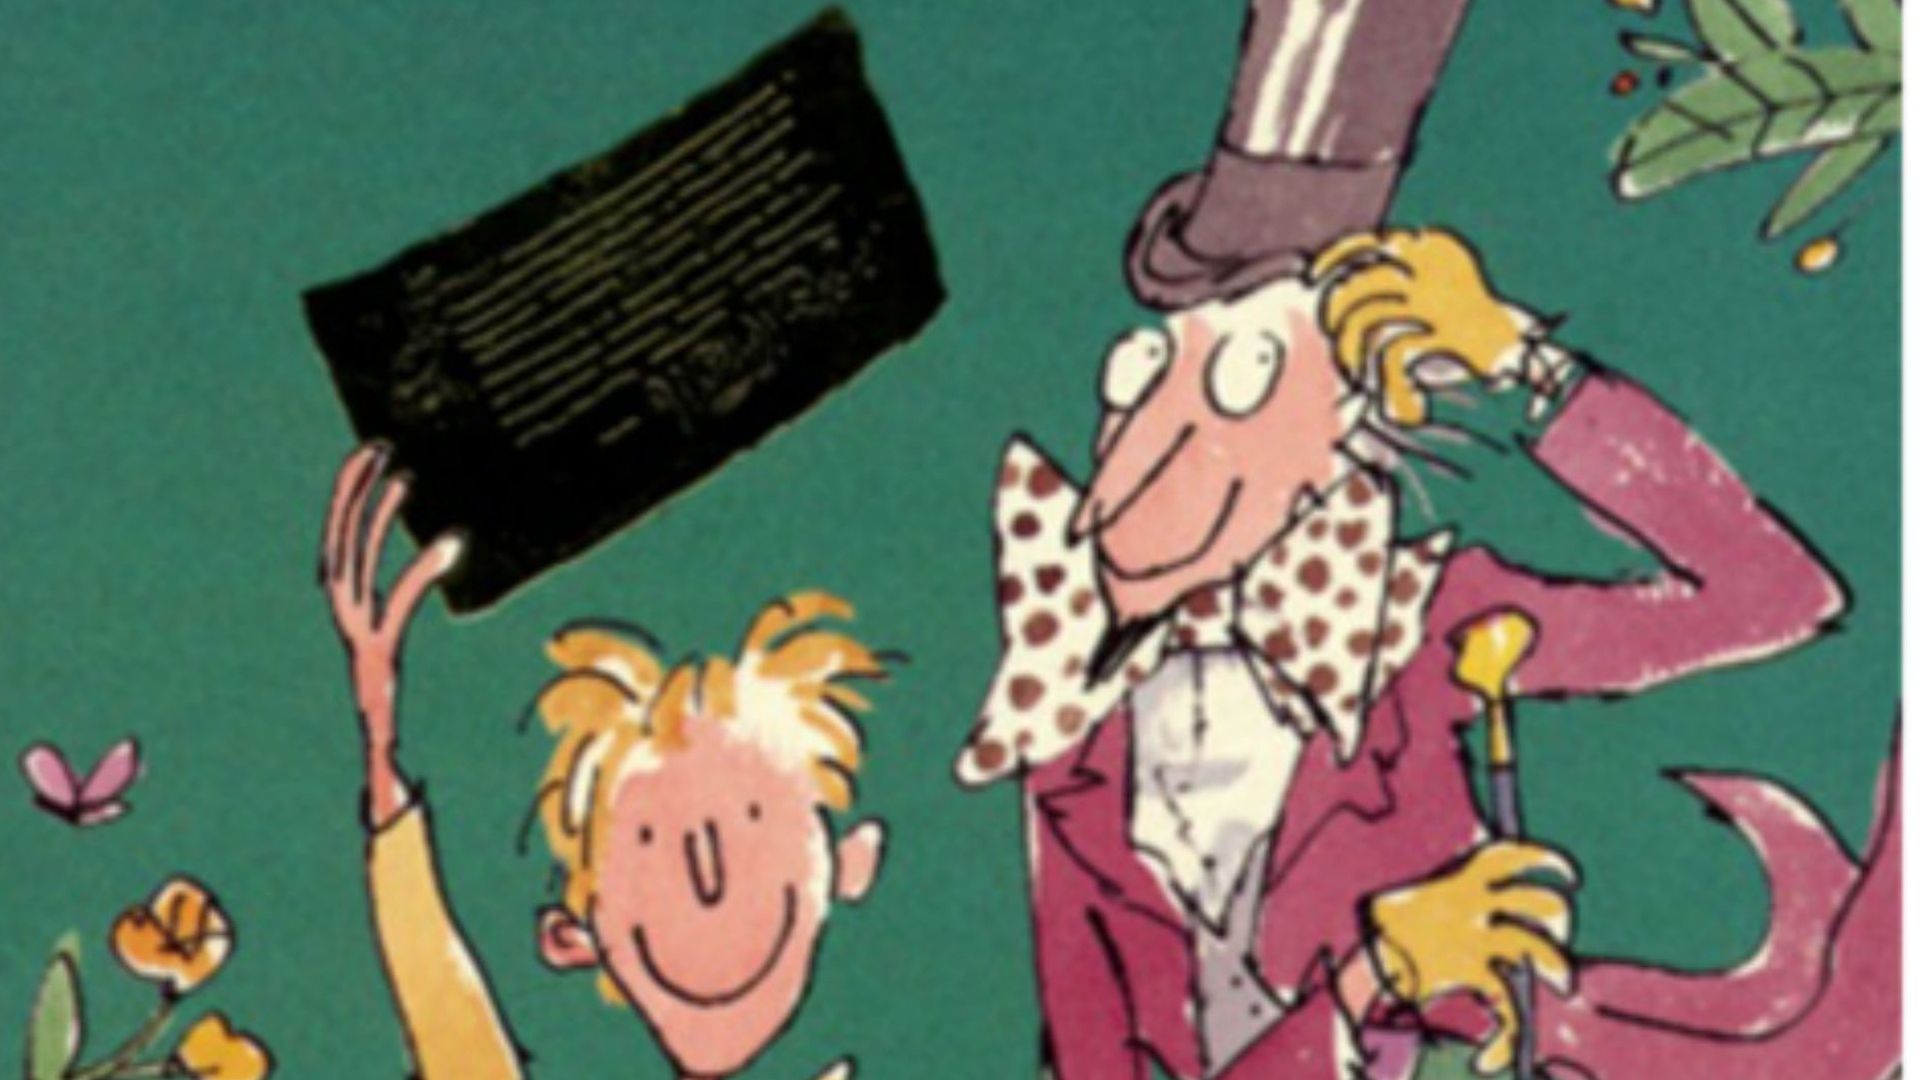 Charlie et la chocolaterie : Roald Dahl voulait un héros noir 